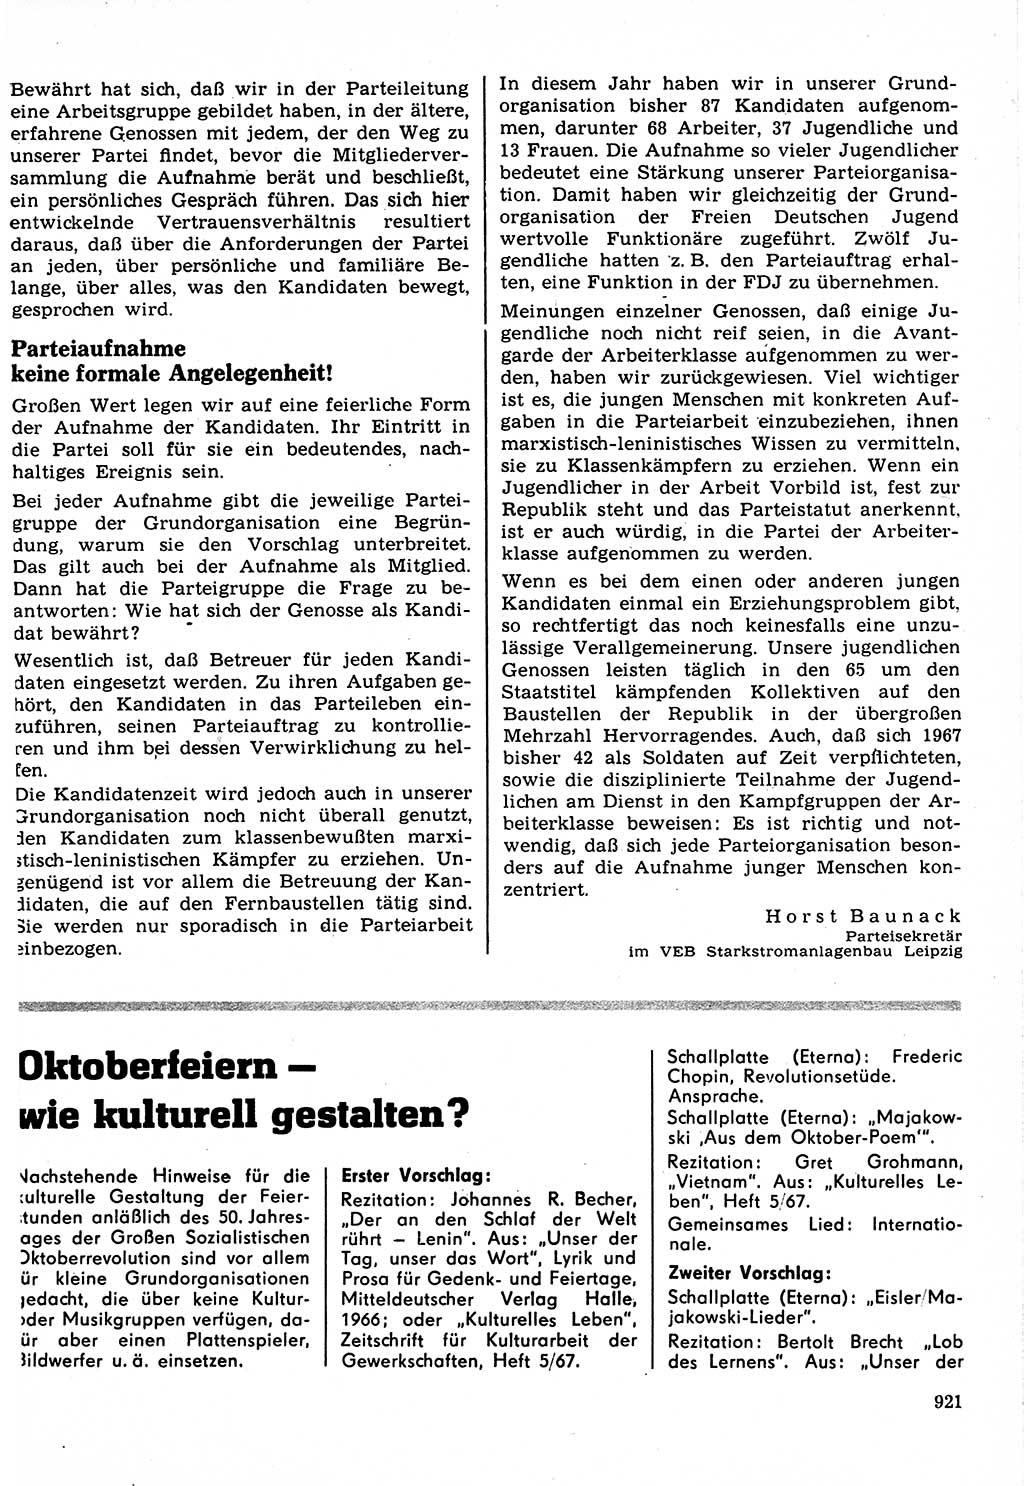 Neuer Weg (NW), Organ des Zentralkomitees (ZK) der SED (Sozialistische Einheitspartei Deutschlands) für Fragen des Parteilebens, 22. Jahrgang [Deutsche Demokratische Republik (DDR)] 1967, Seite 921 (NW ZK SED DDR 1967, S. 921)